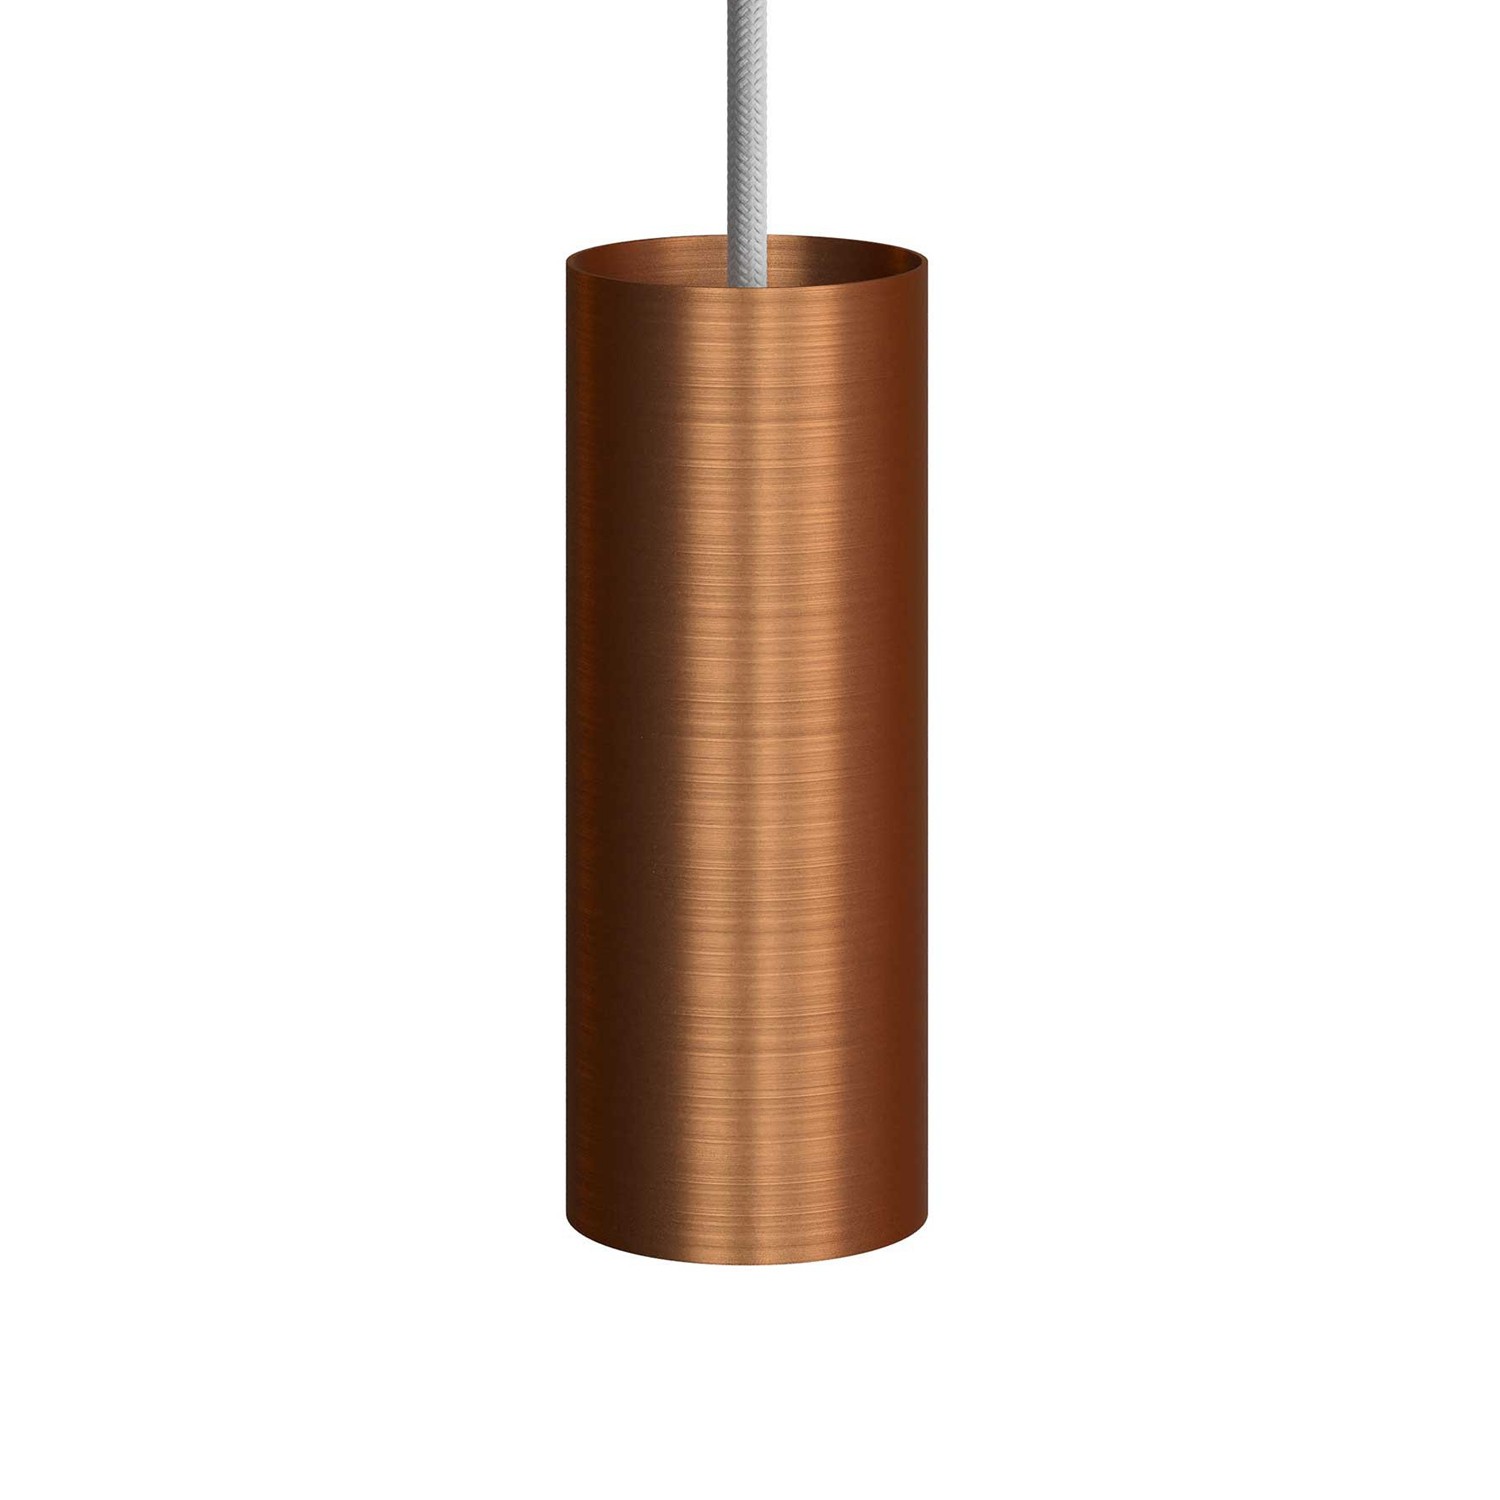 Tub-E14, tubo de metal para foco con portalámparas doble arandela E14